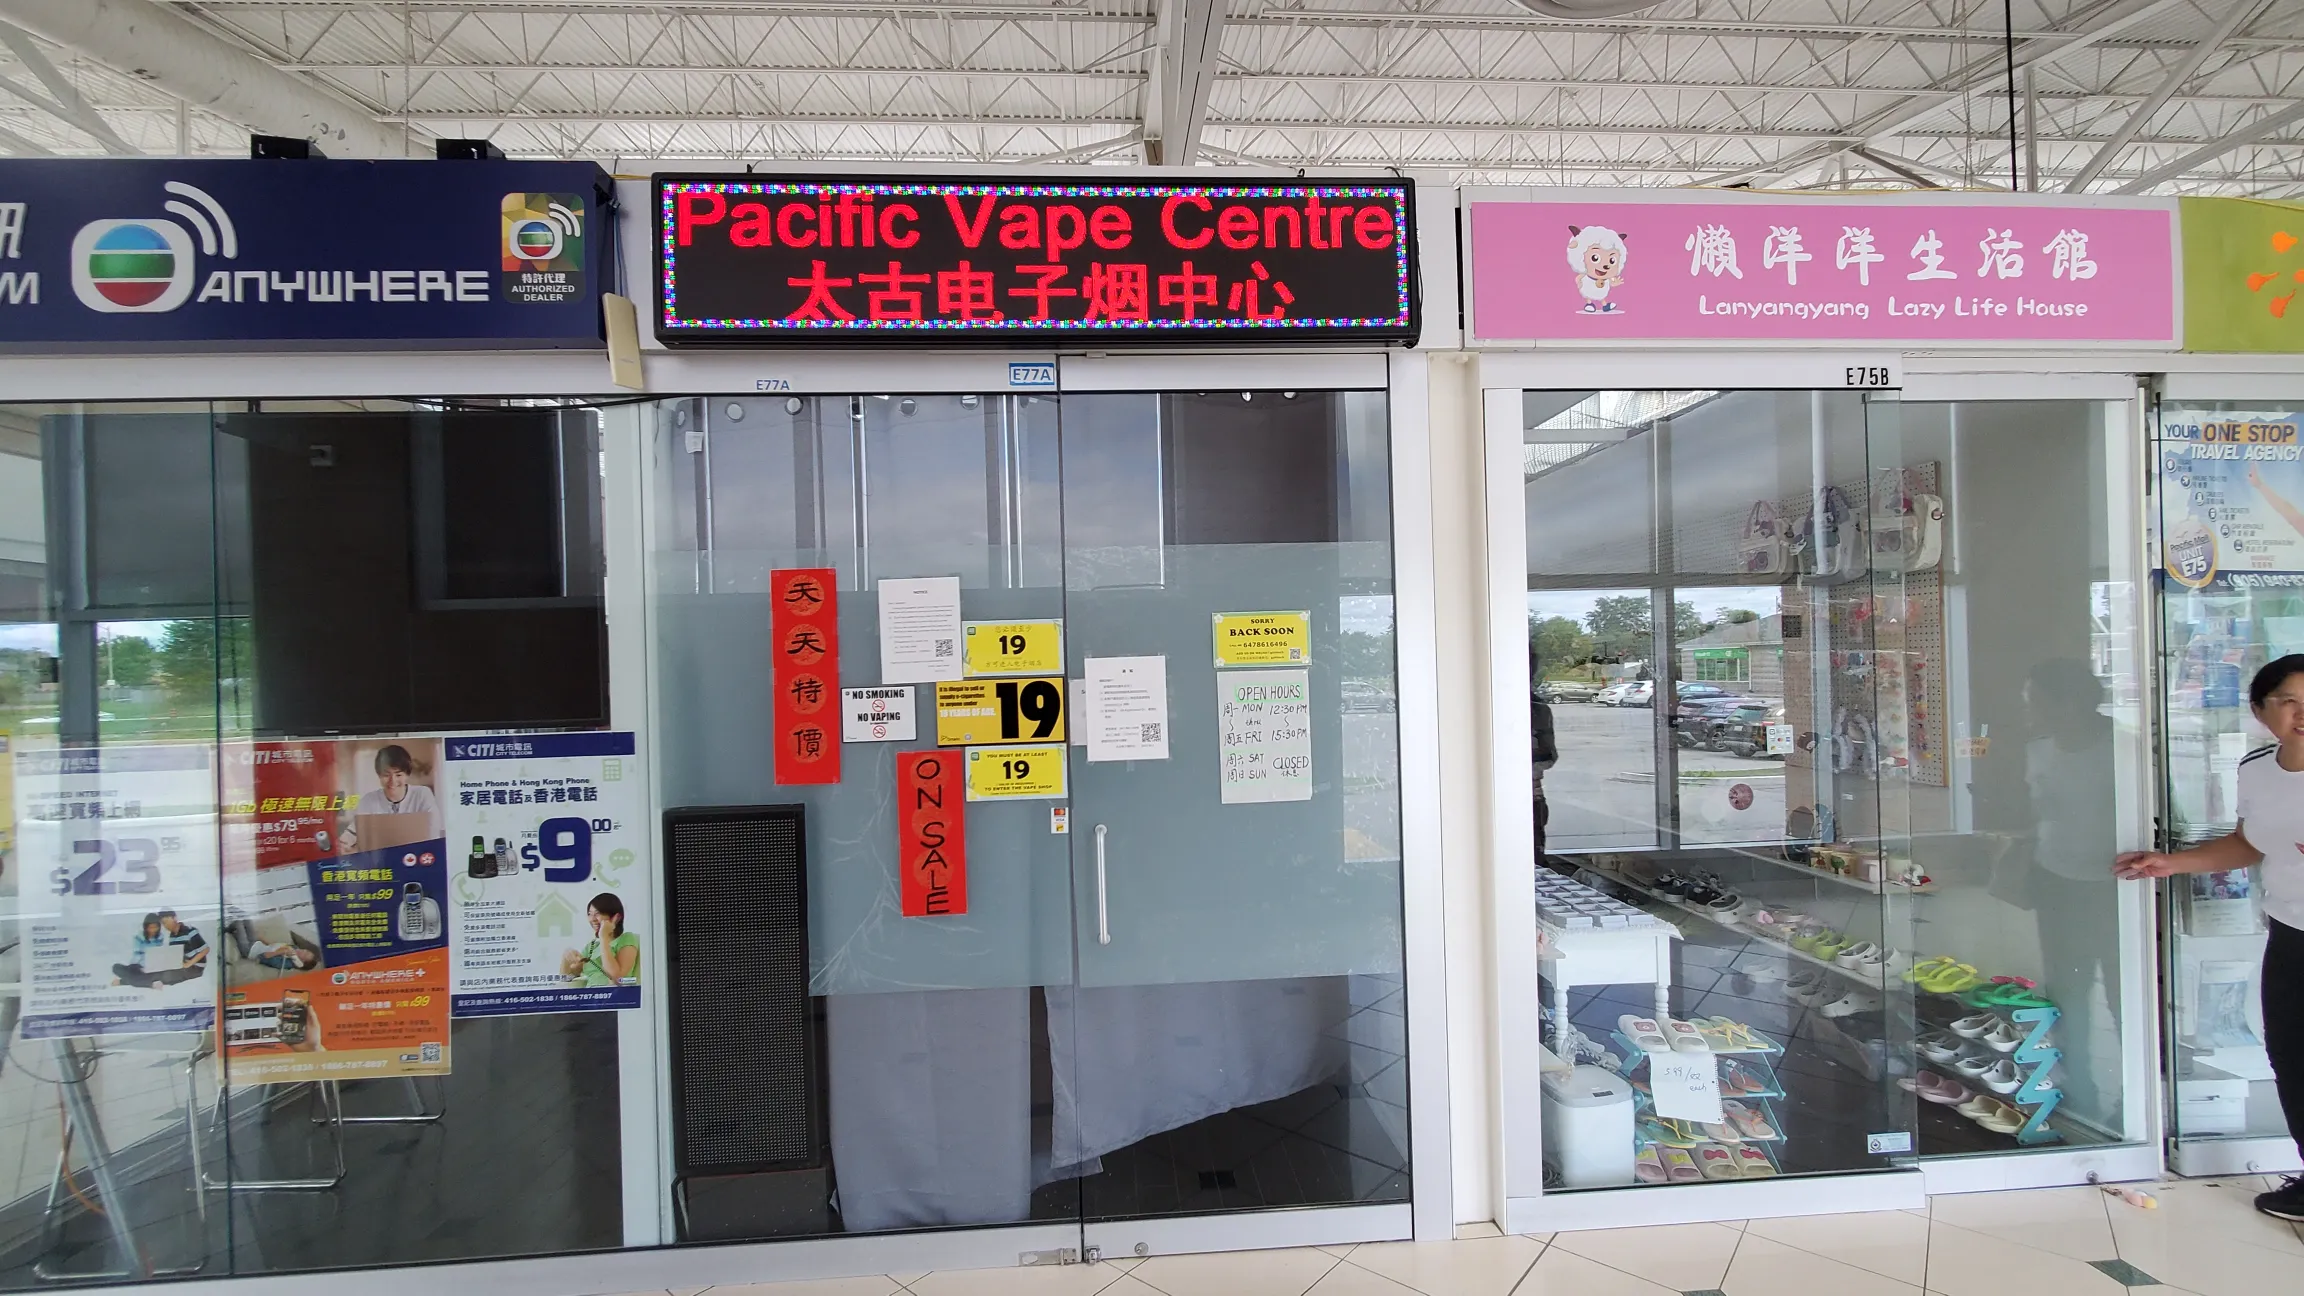 Pacific Vape Centre